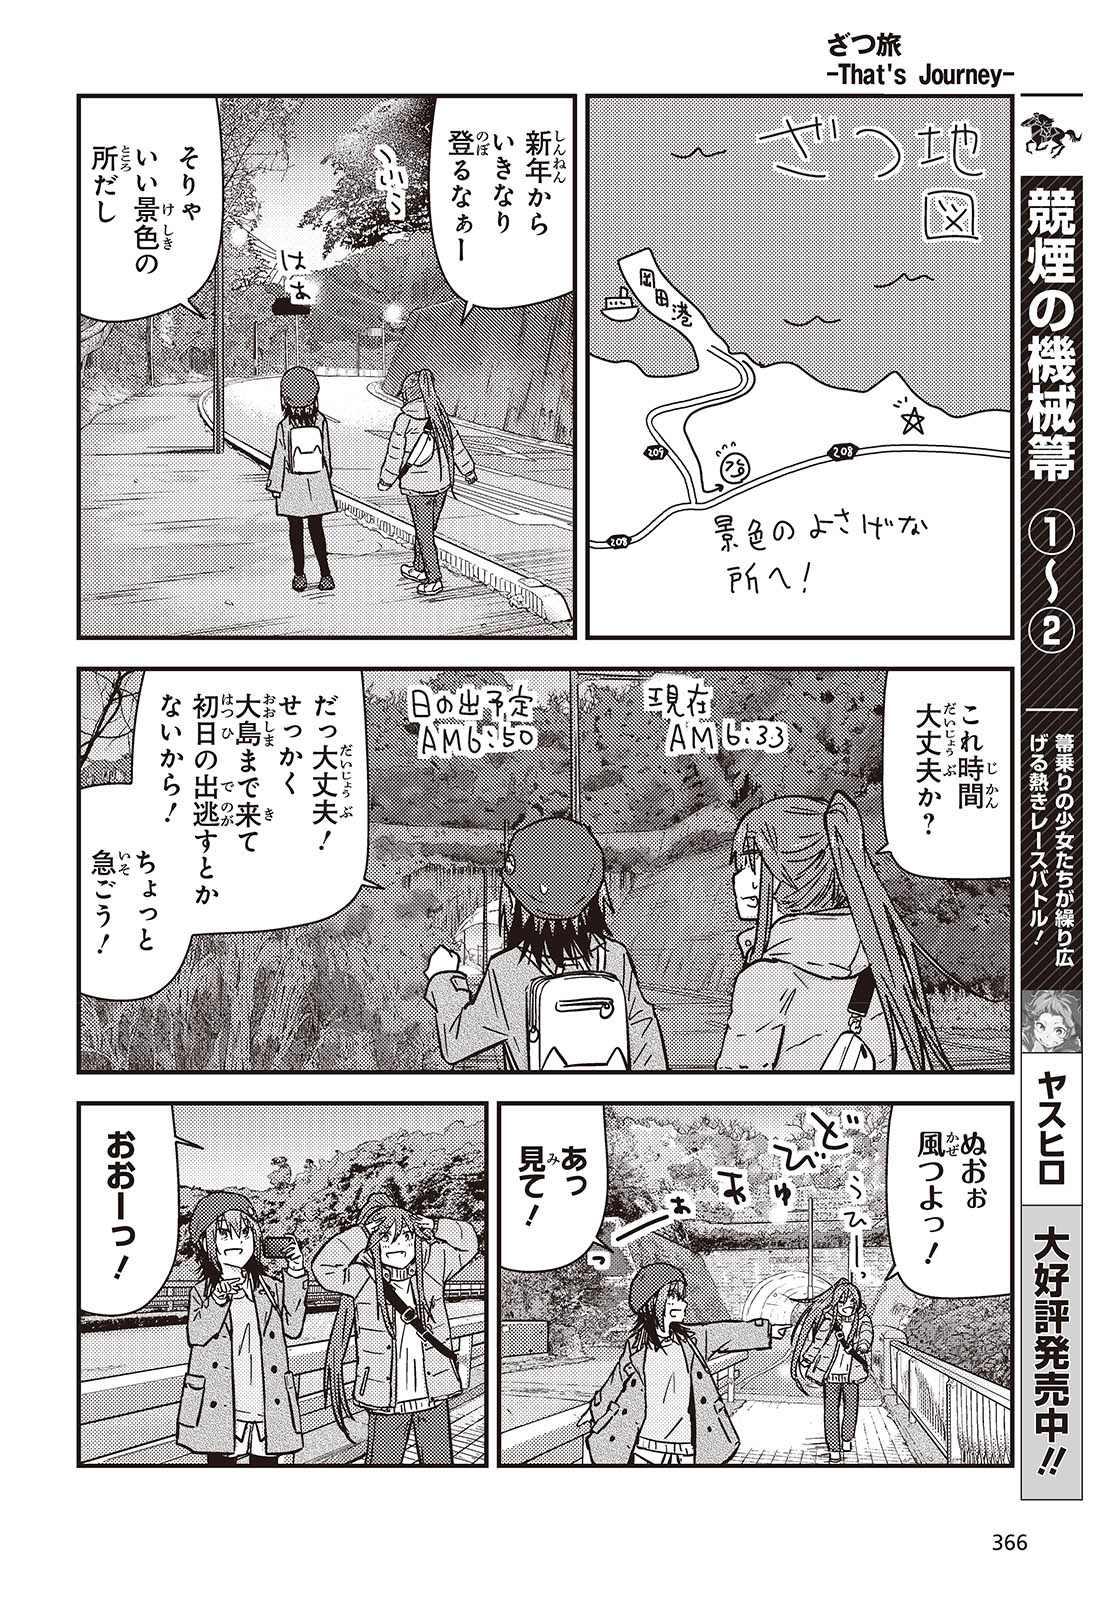 ざつ旅-That’s Journey- 第37話 - Page 10